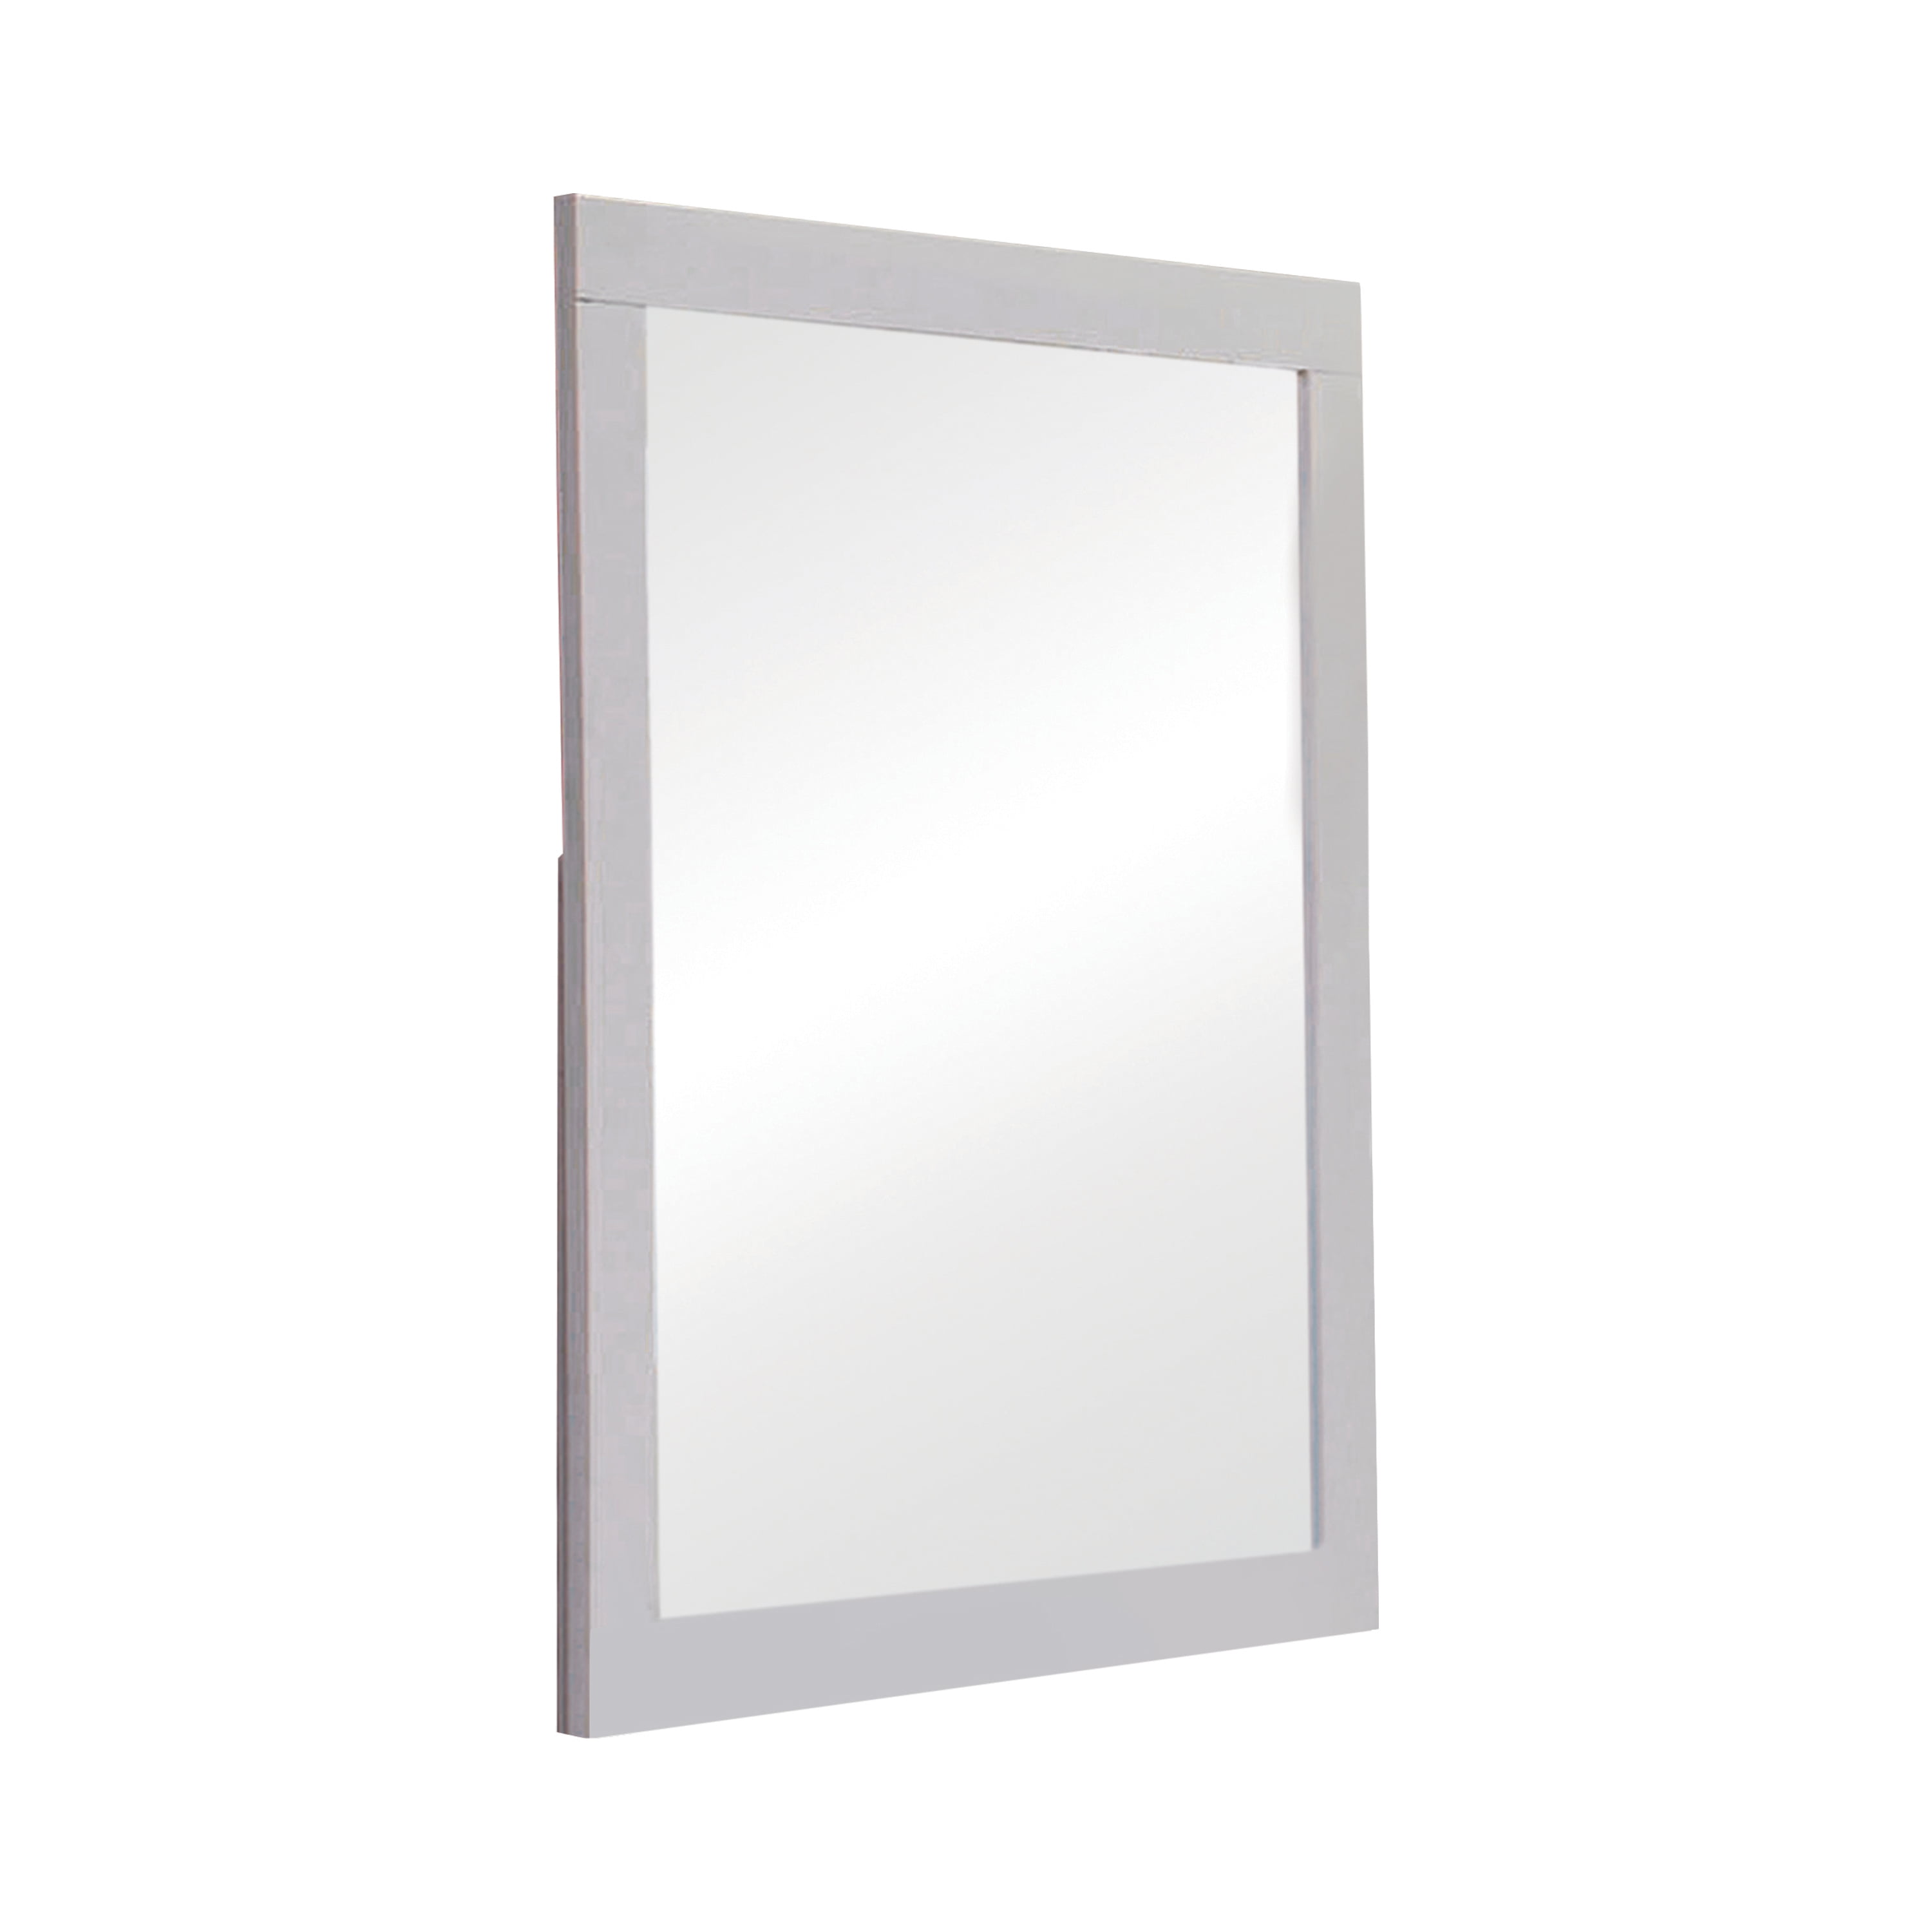 Selena Rectangular Dresser Mirror White, Large Mirror With White Border